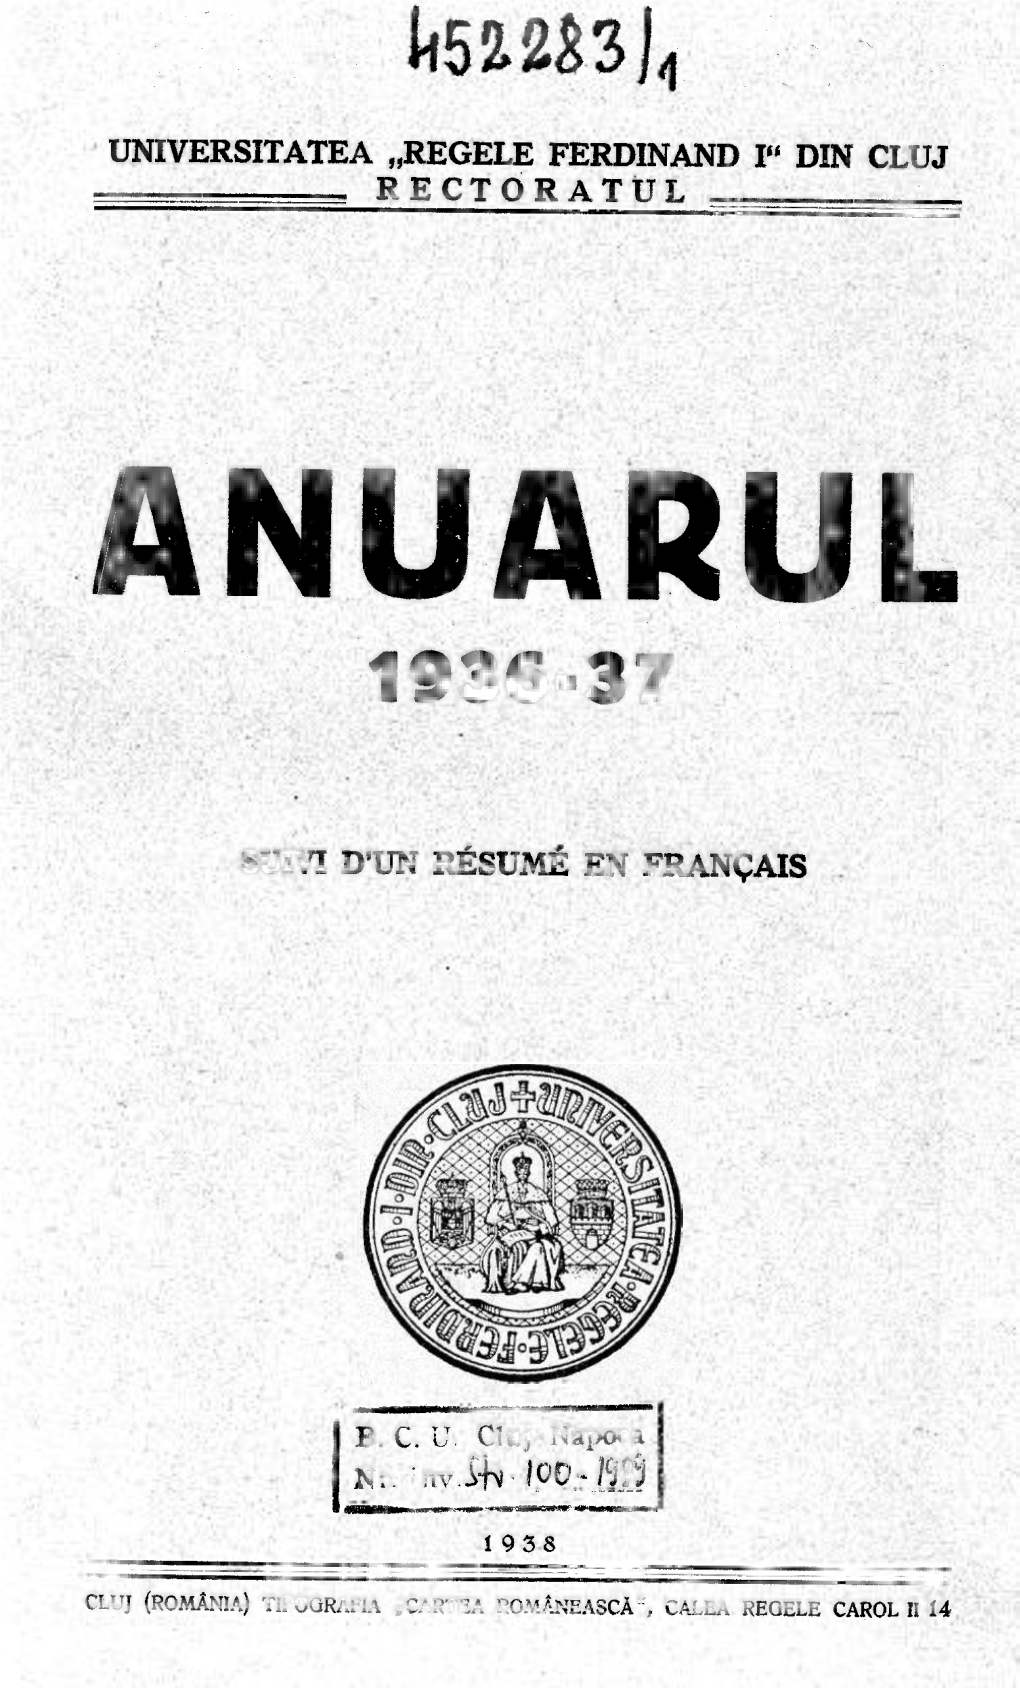 Anuarul 1936-37